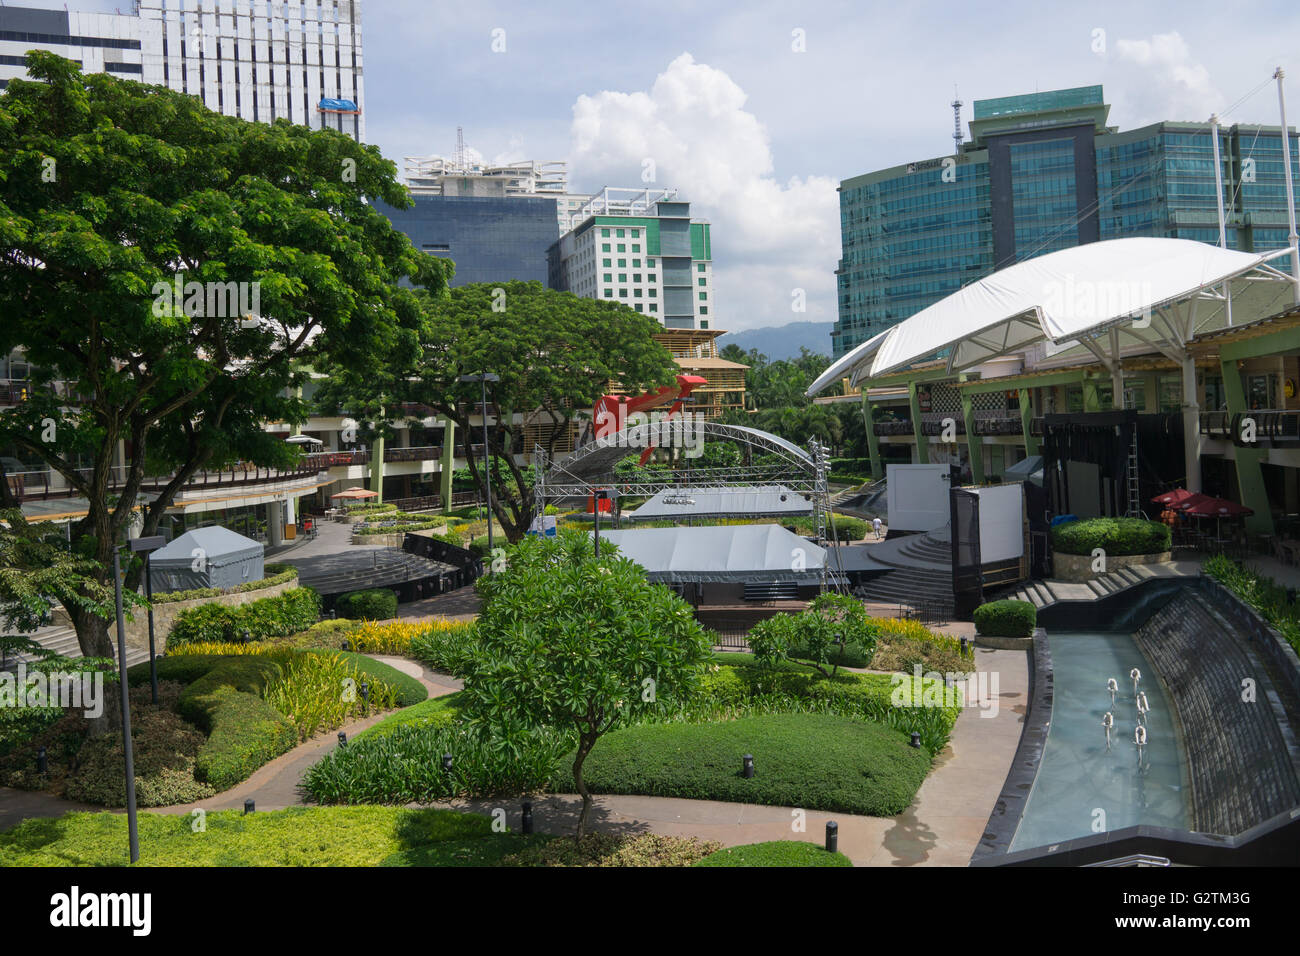 Das Ayala Center ist ein großes Einkaufszentrum befindet sich in Cebu City, Philippinen. Stockfoto